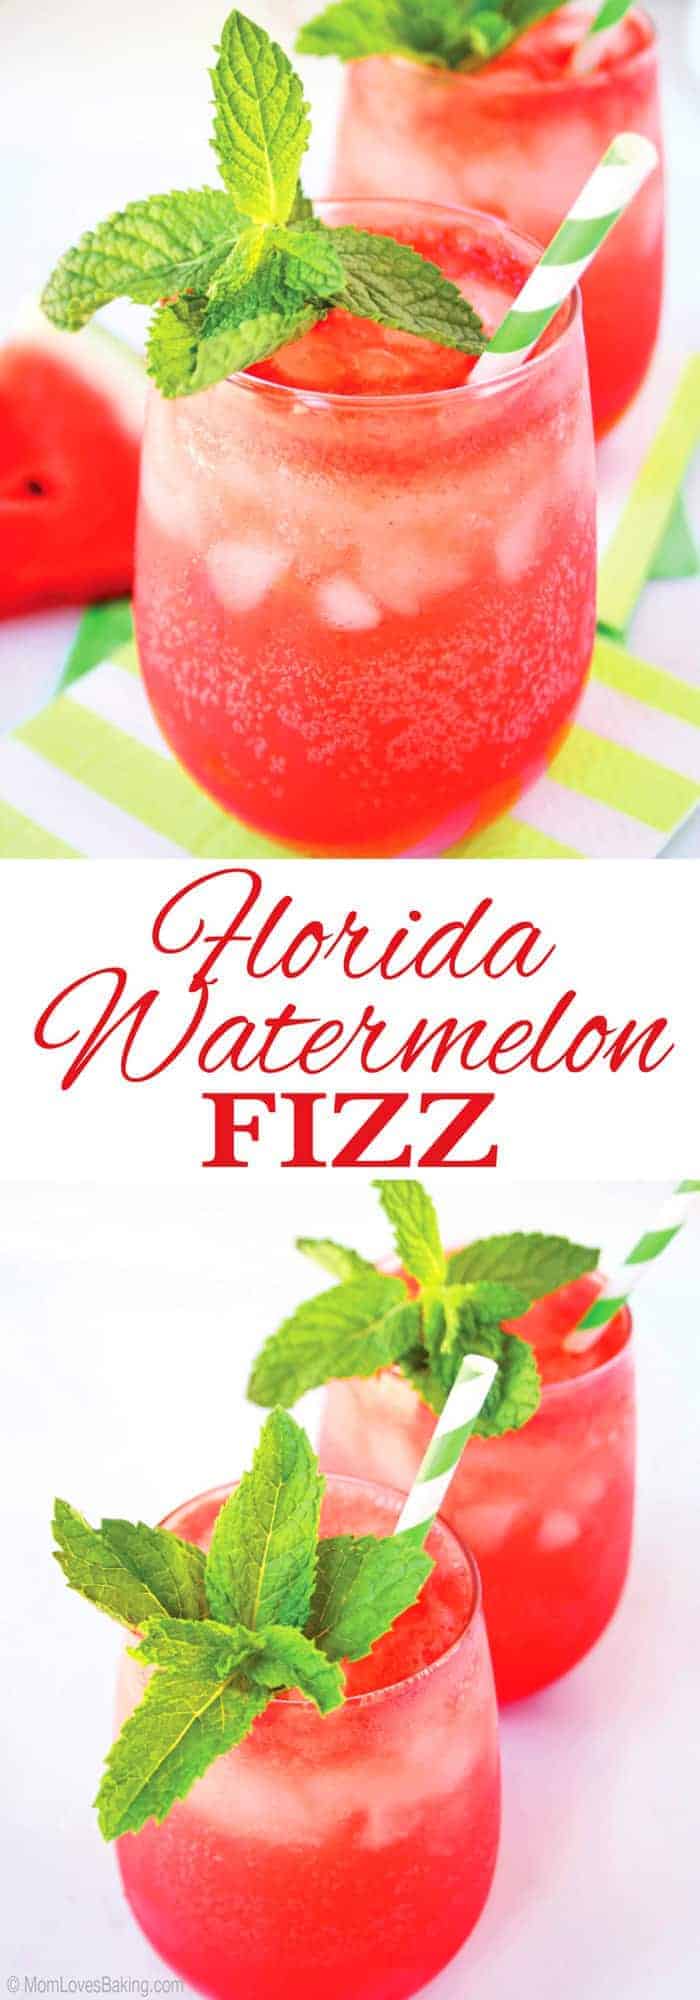 Watermelon Fizz